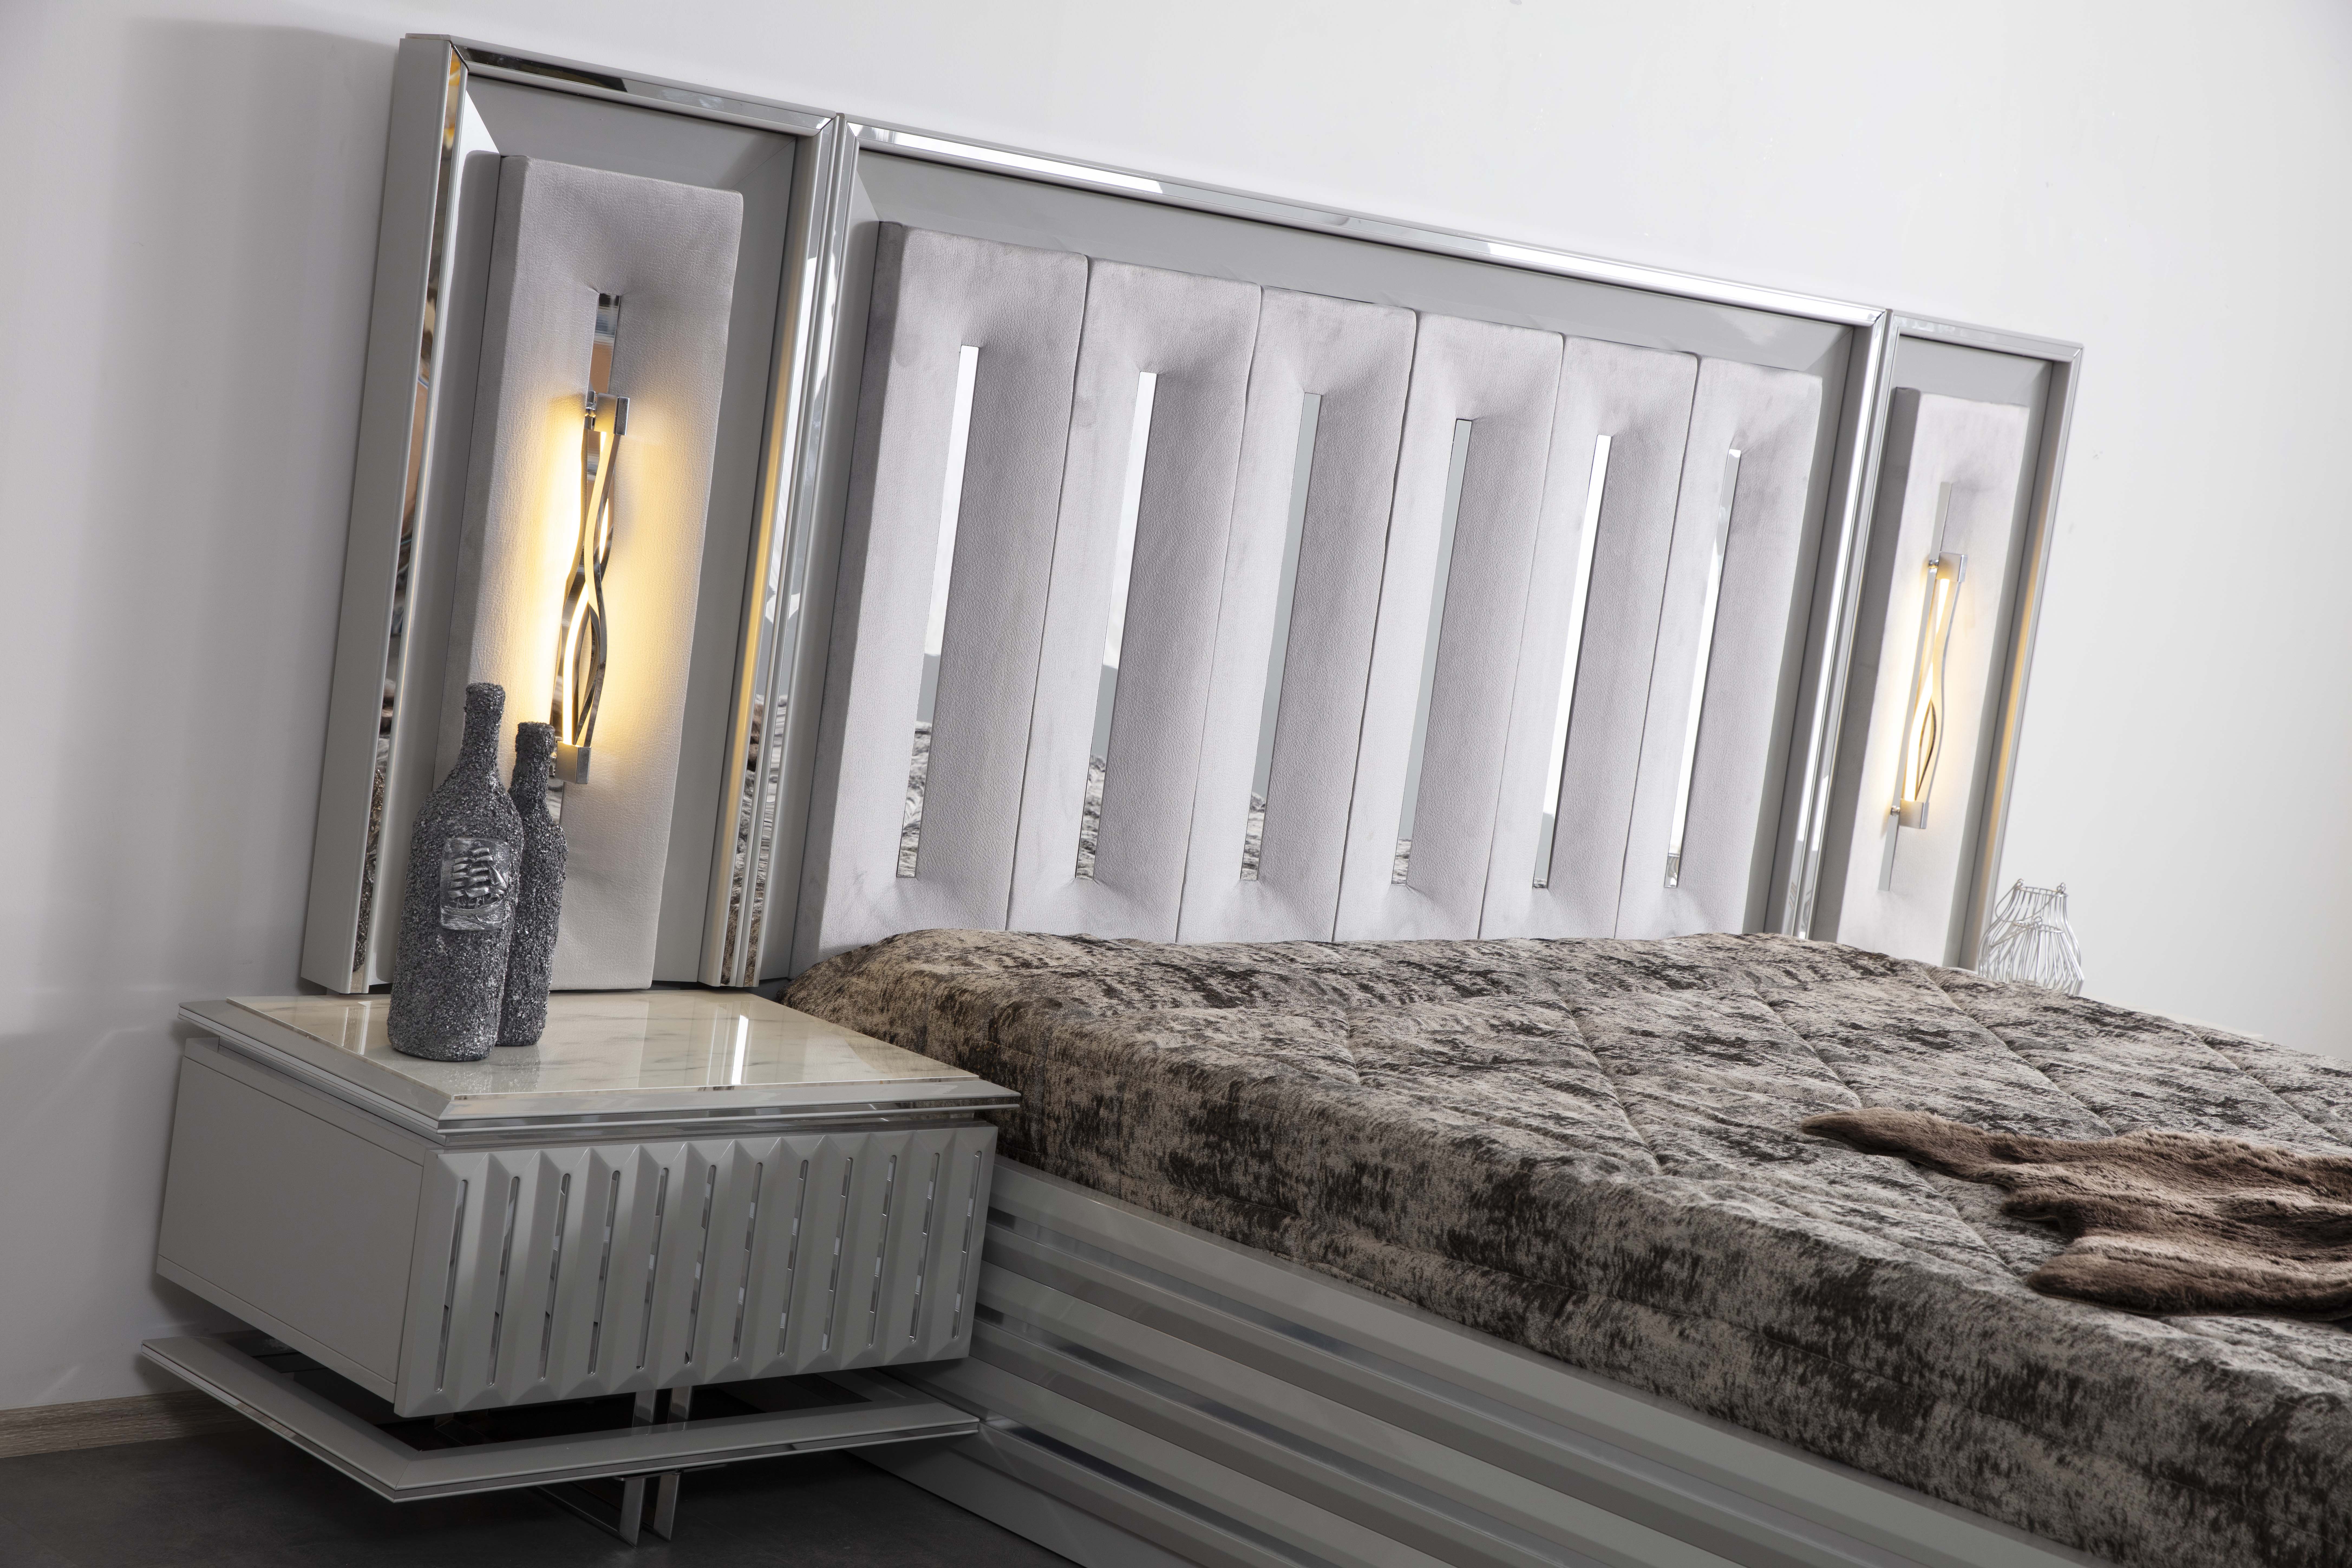 Yatak Odası-Körfez Mobilya